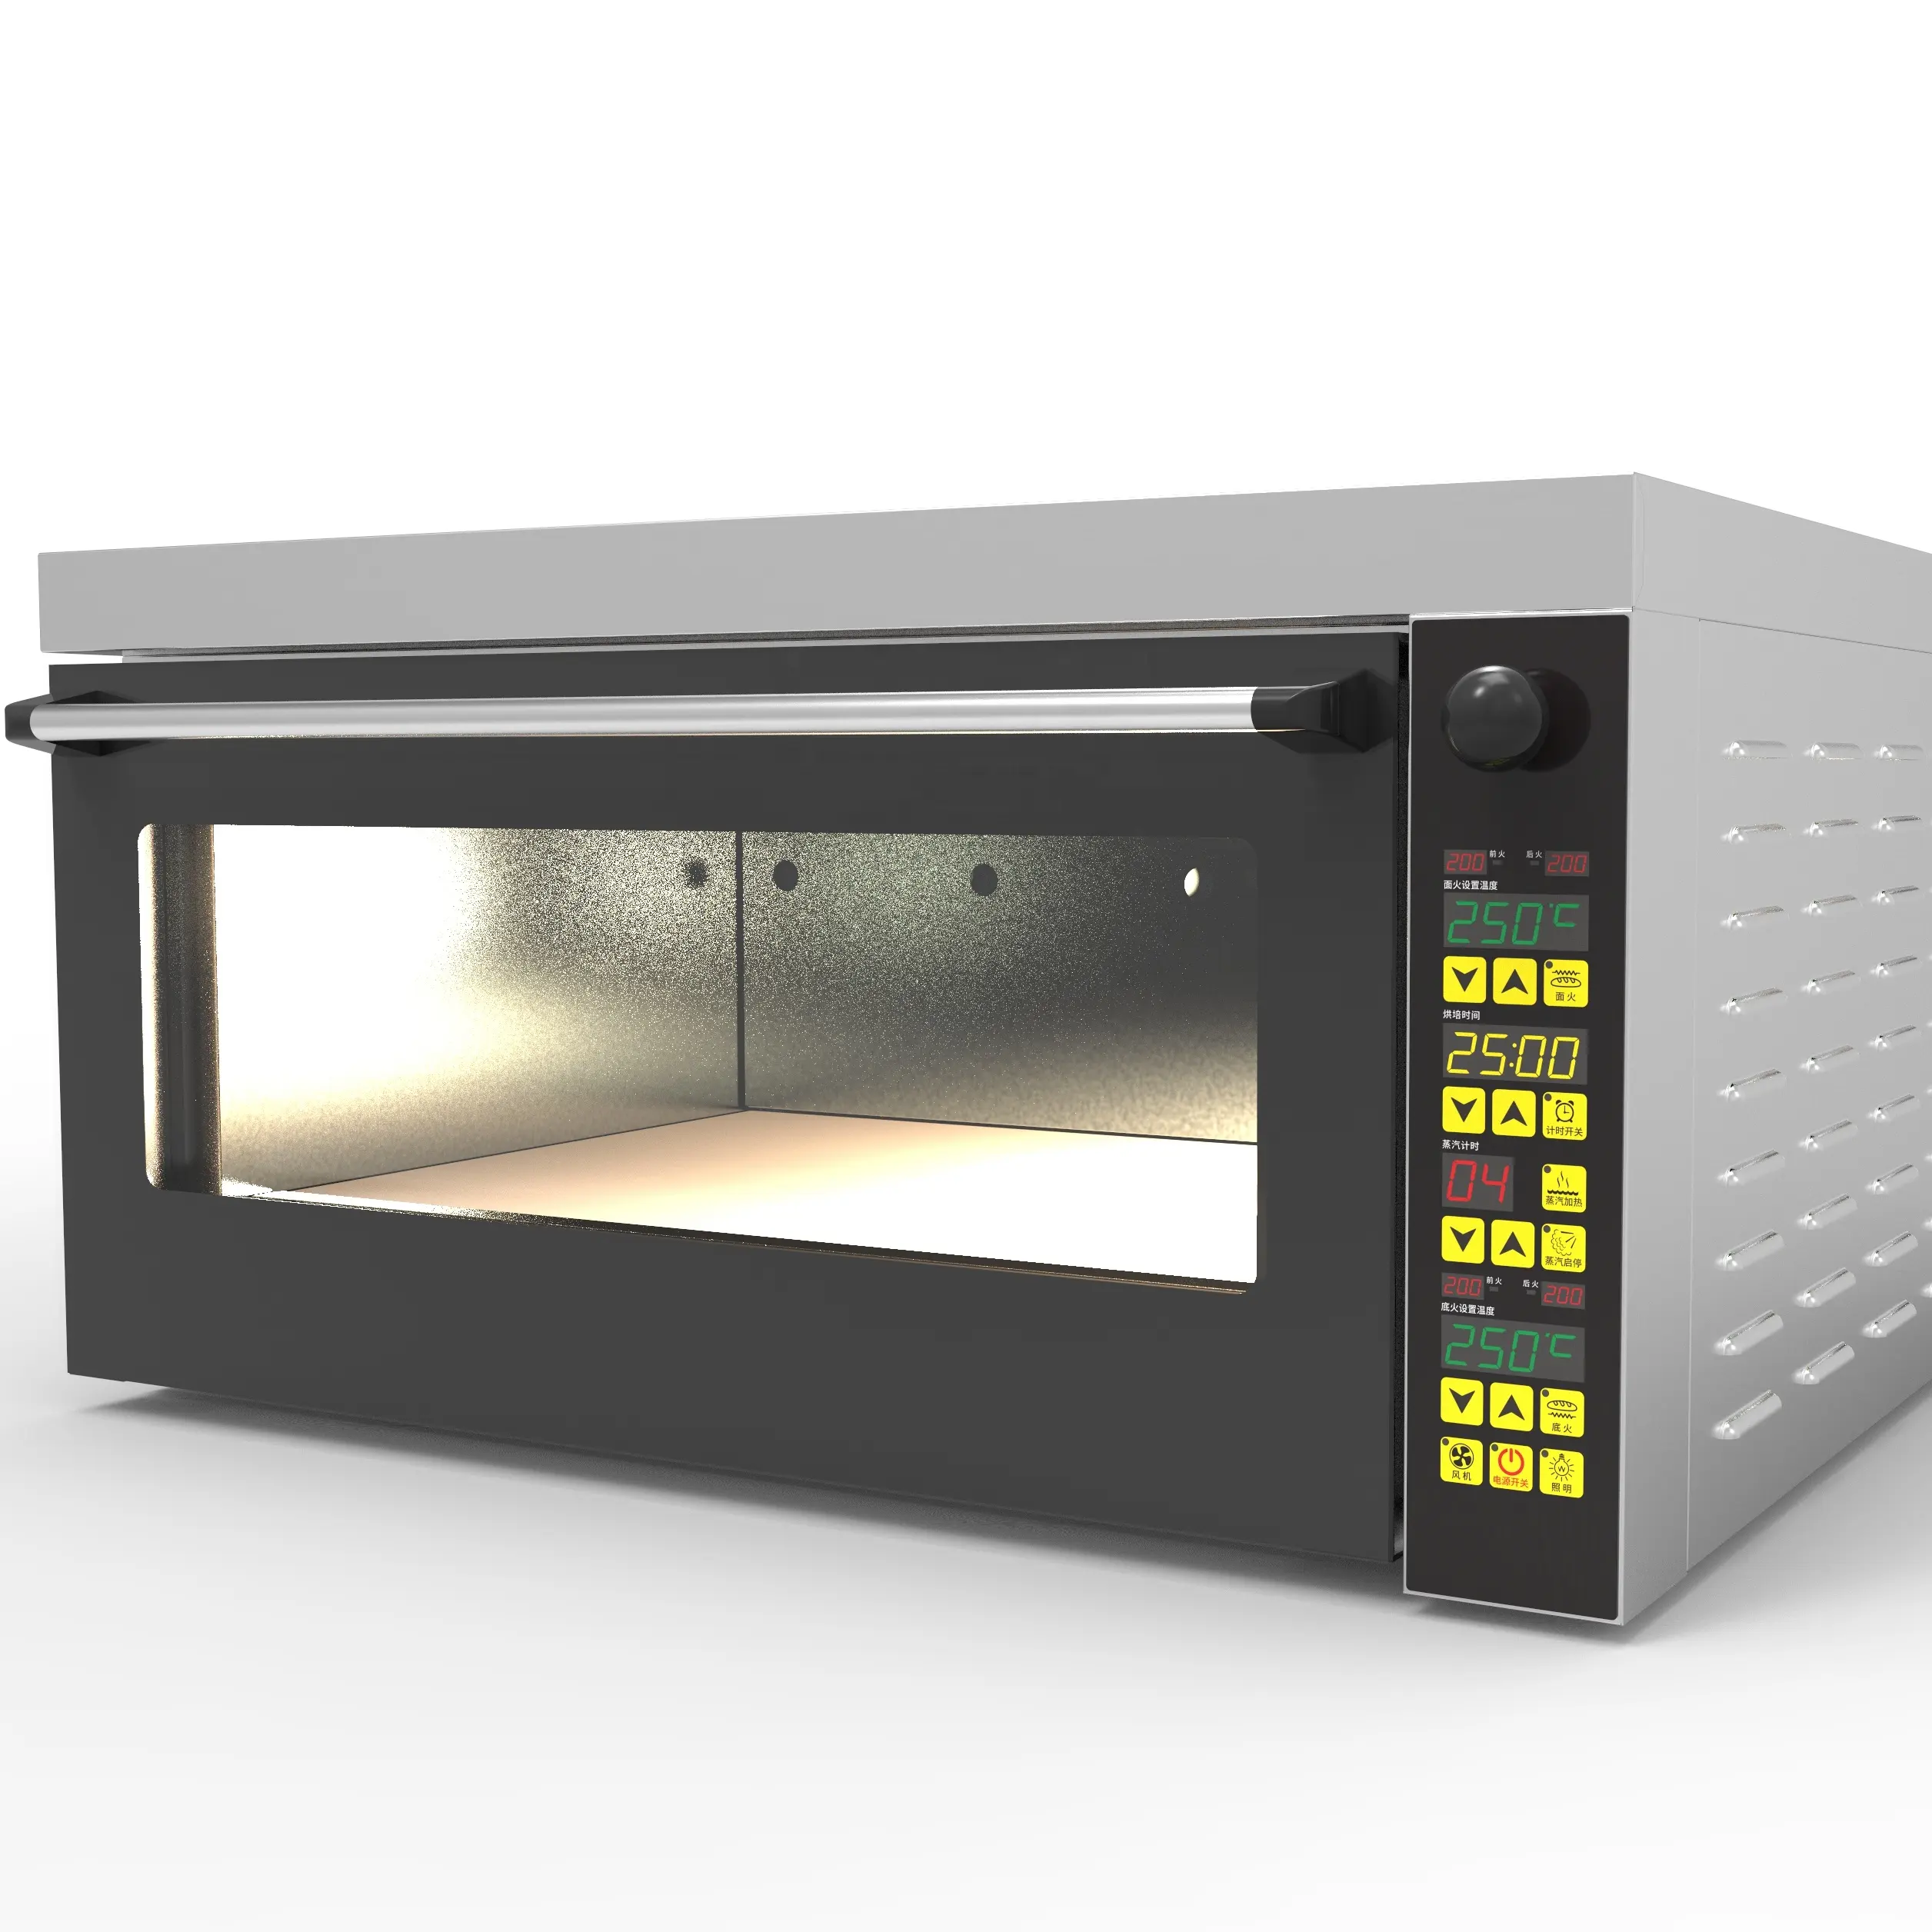 Oven Elektrik Oven Panggangan Pizza, Oven Dek Eropa untuk Manik-manik dan Wadah